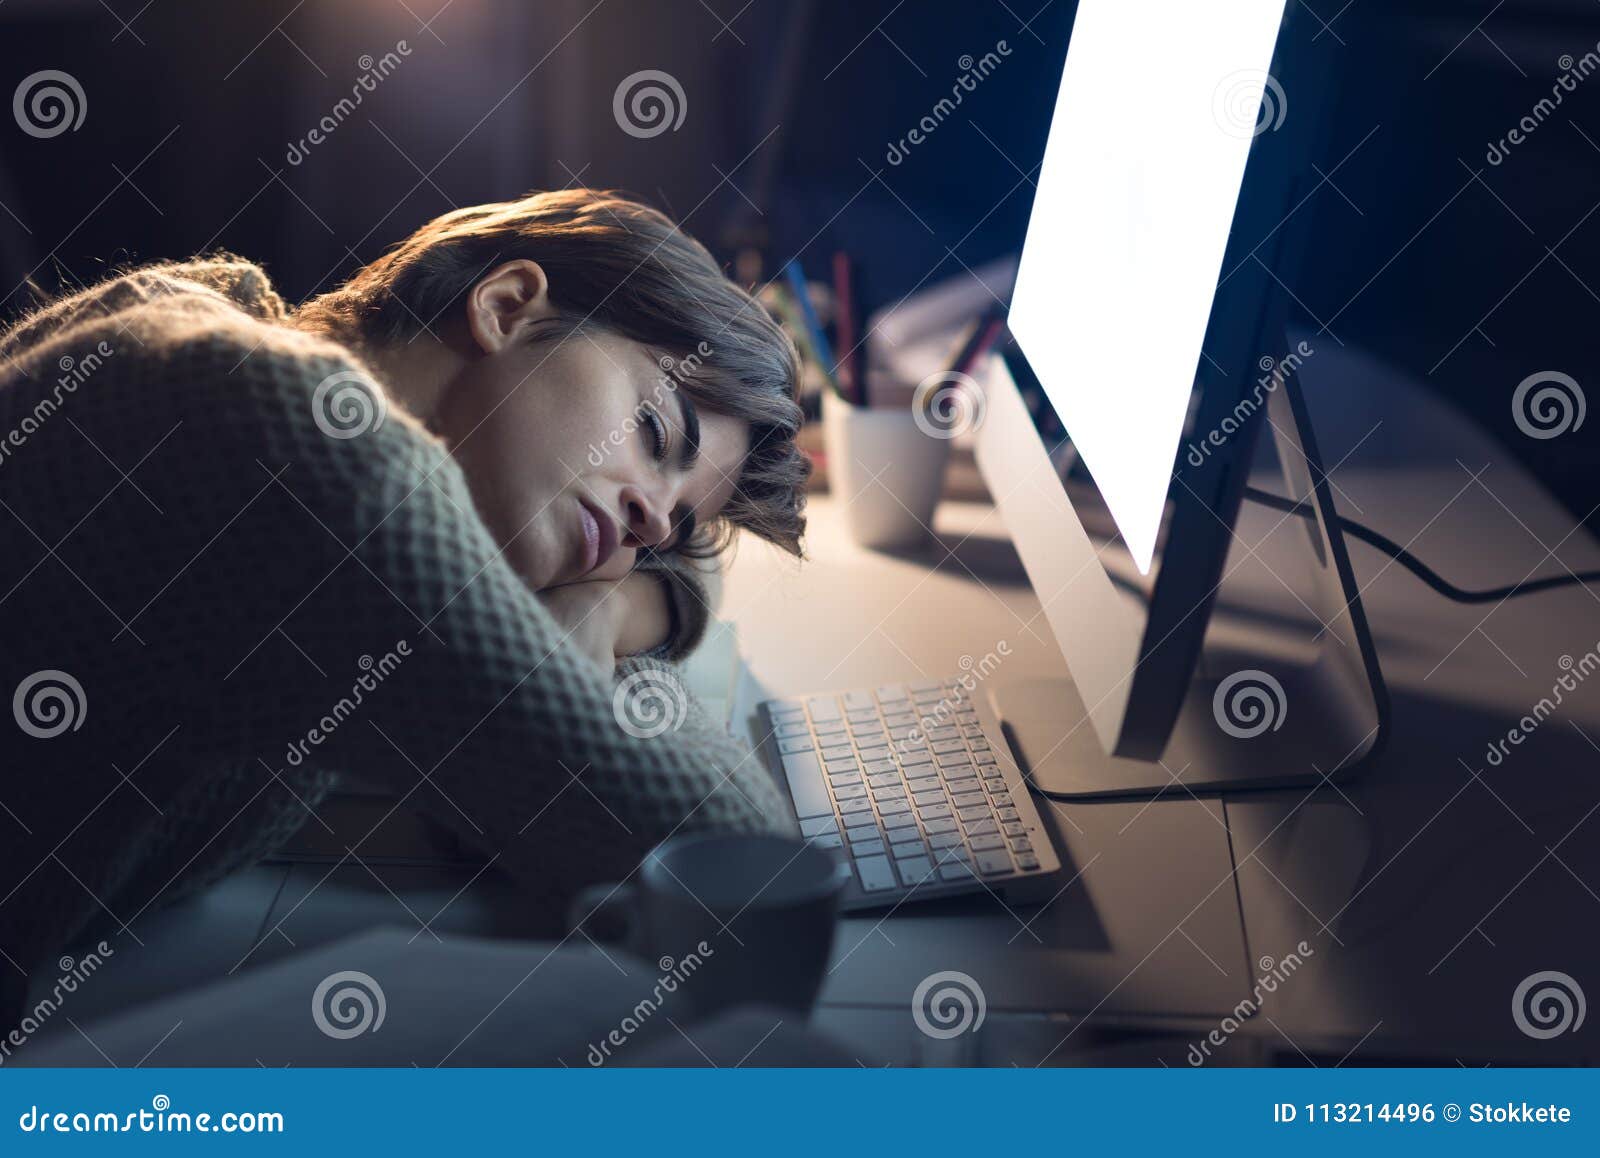 Включи экран спать. Спящий человек на столе. Женщина за компьютером ночью.